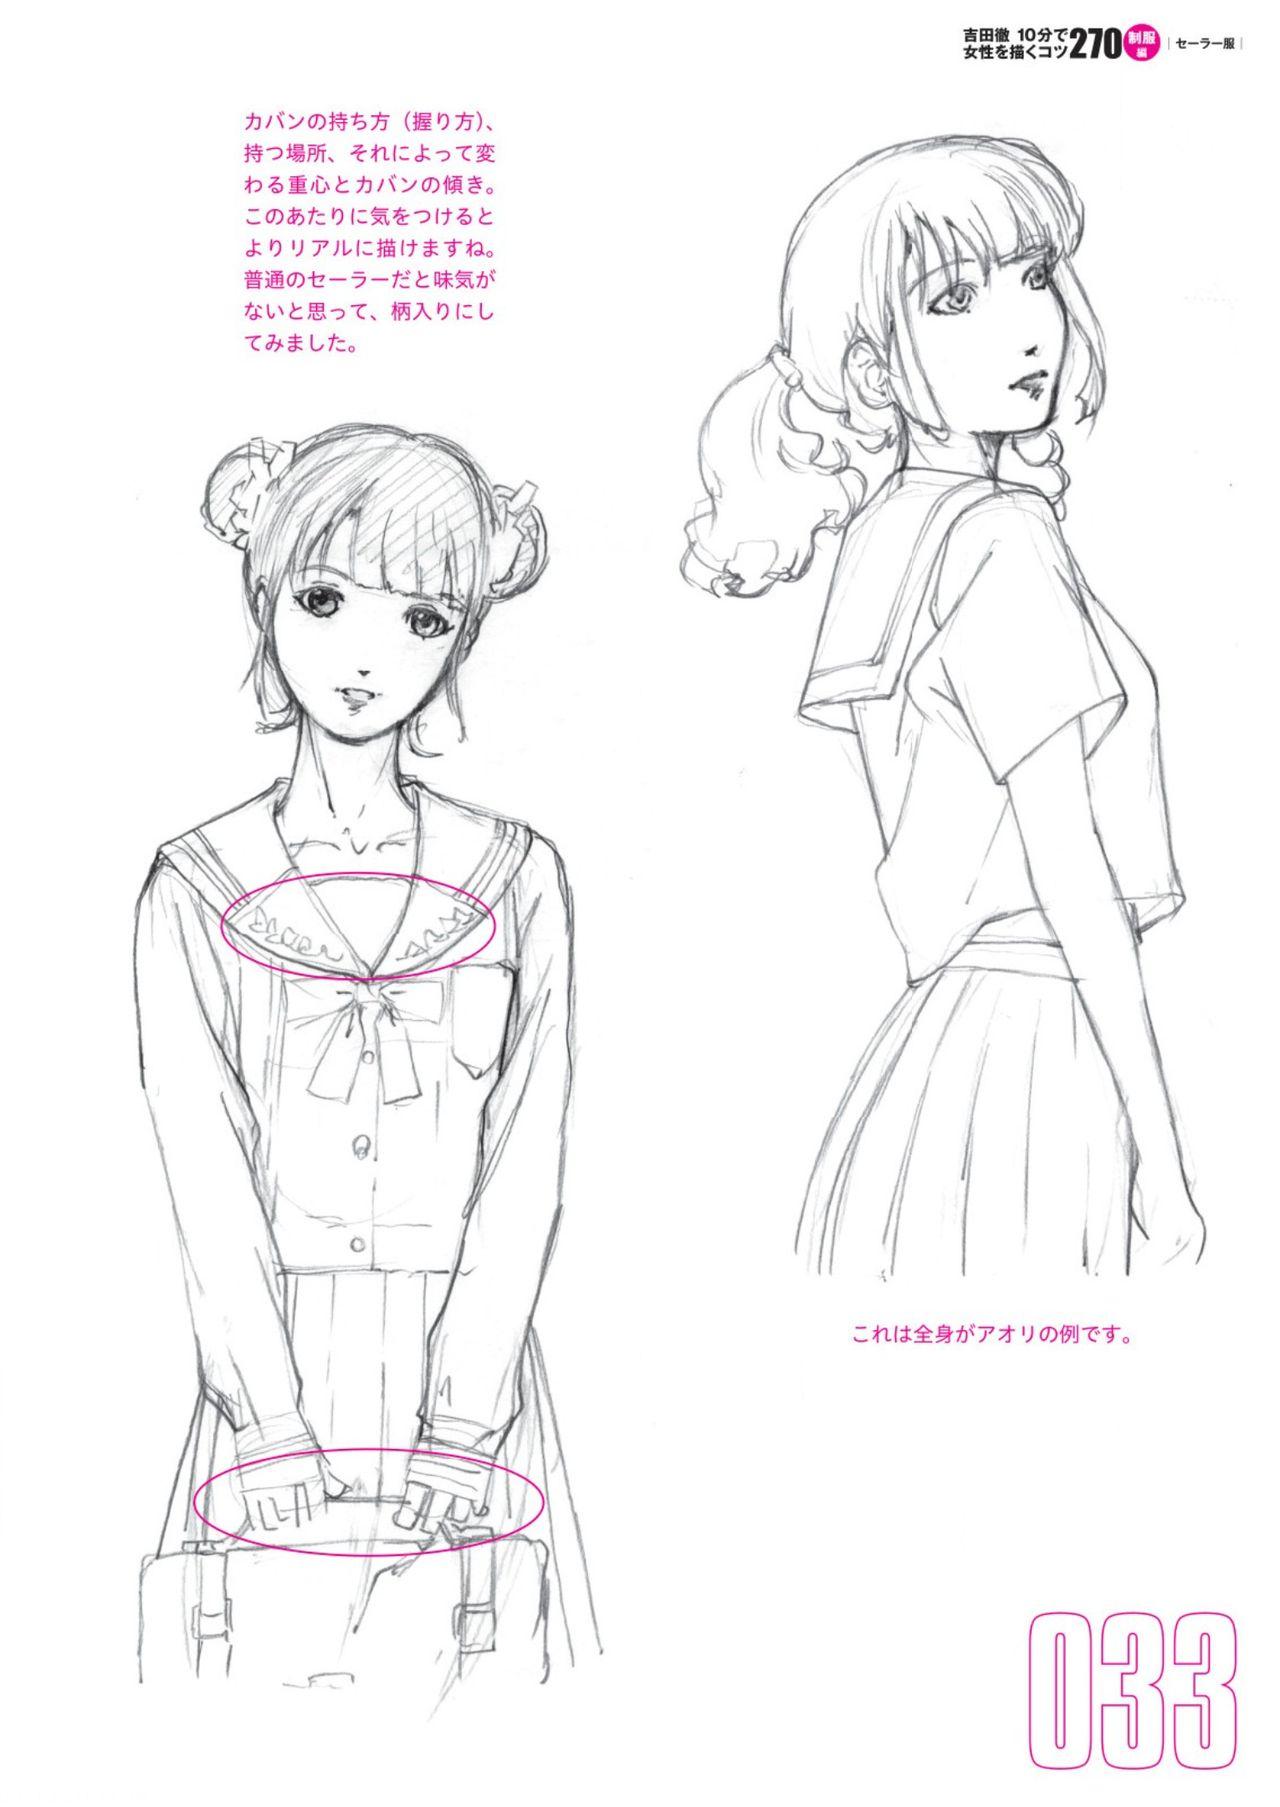 Toru Yoshida Tips for drawing women in 10 minutes 270 Uniforms 34